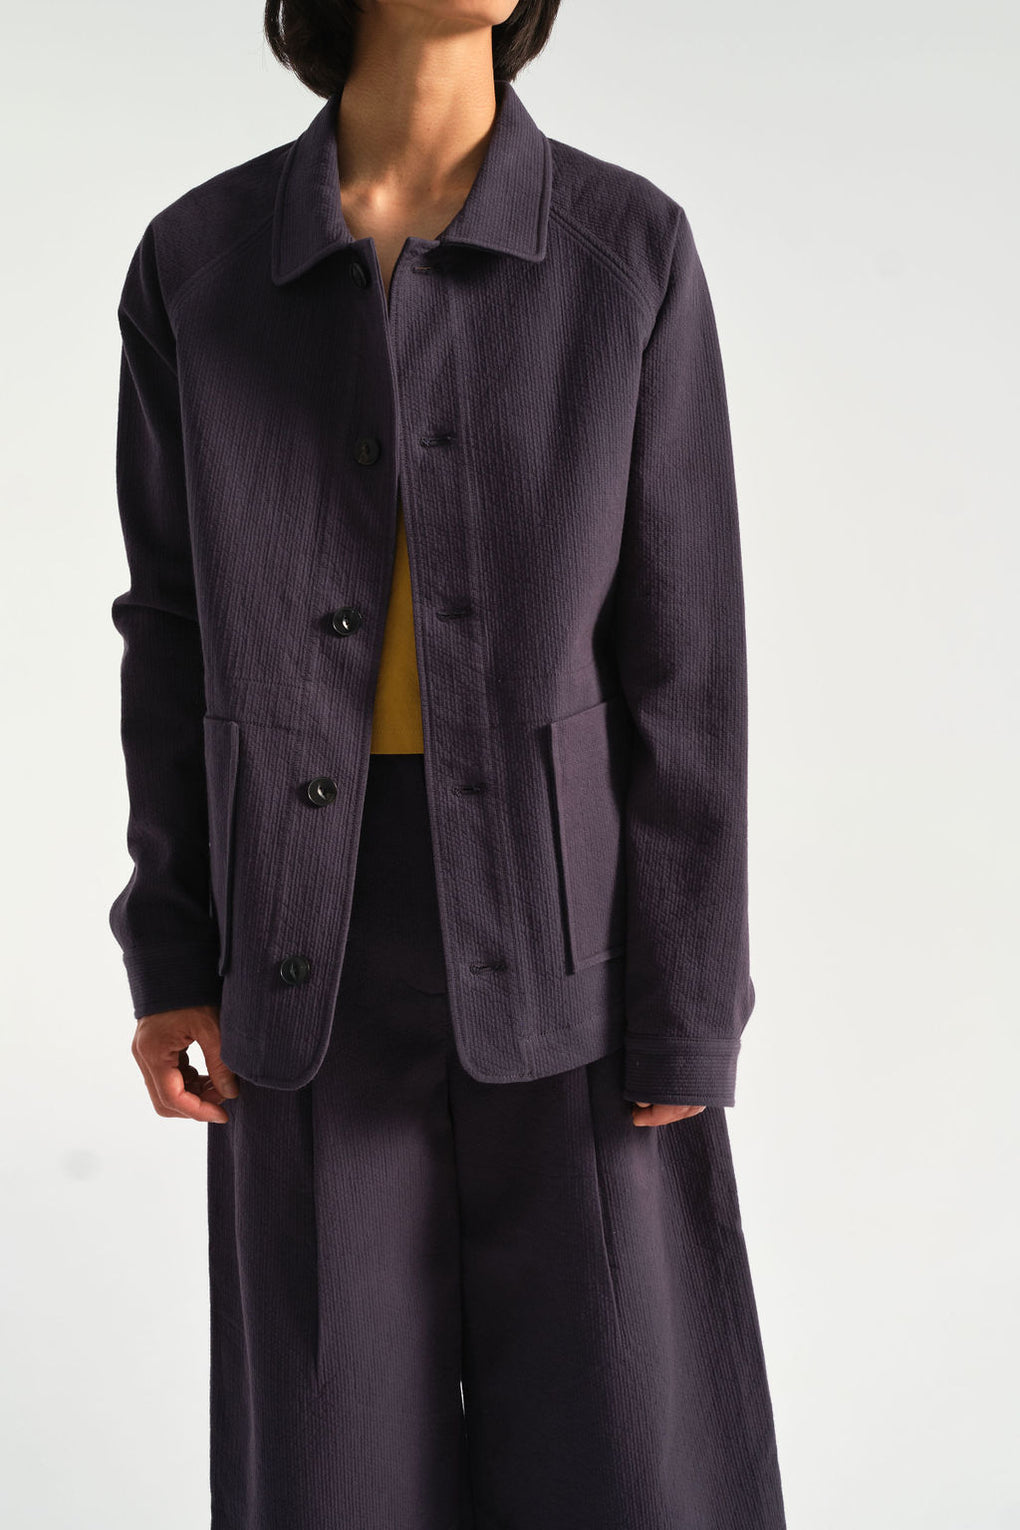 7115 by Szeki-Chore Jacket-blue unisex jacket-fall jacket-blue jacket-navy jacket-Idun-St. Paul